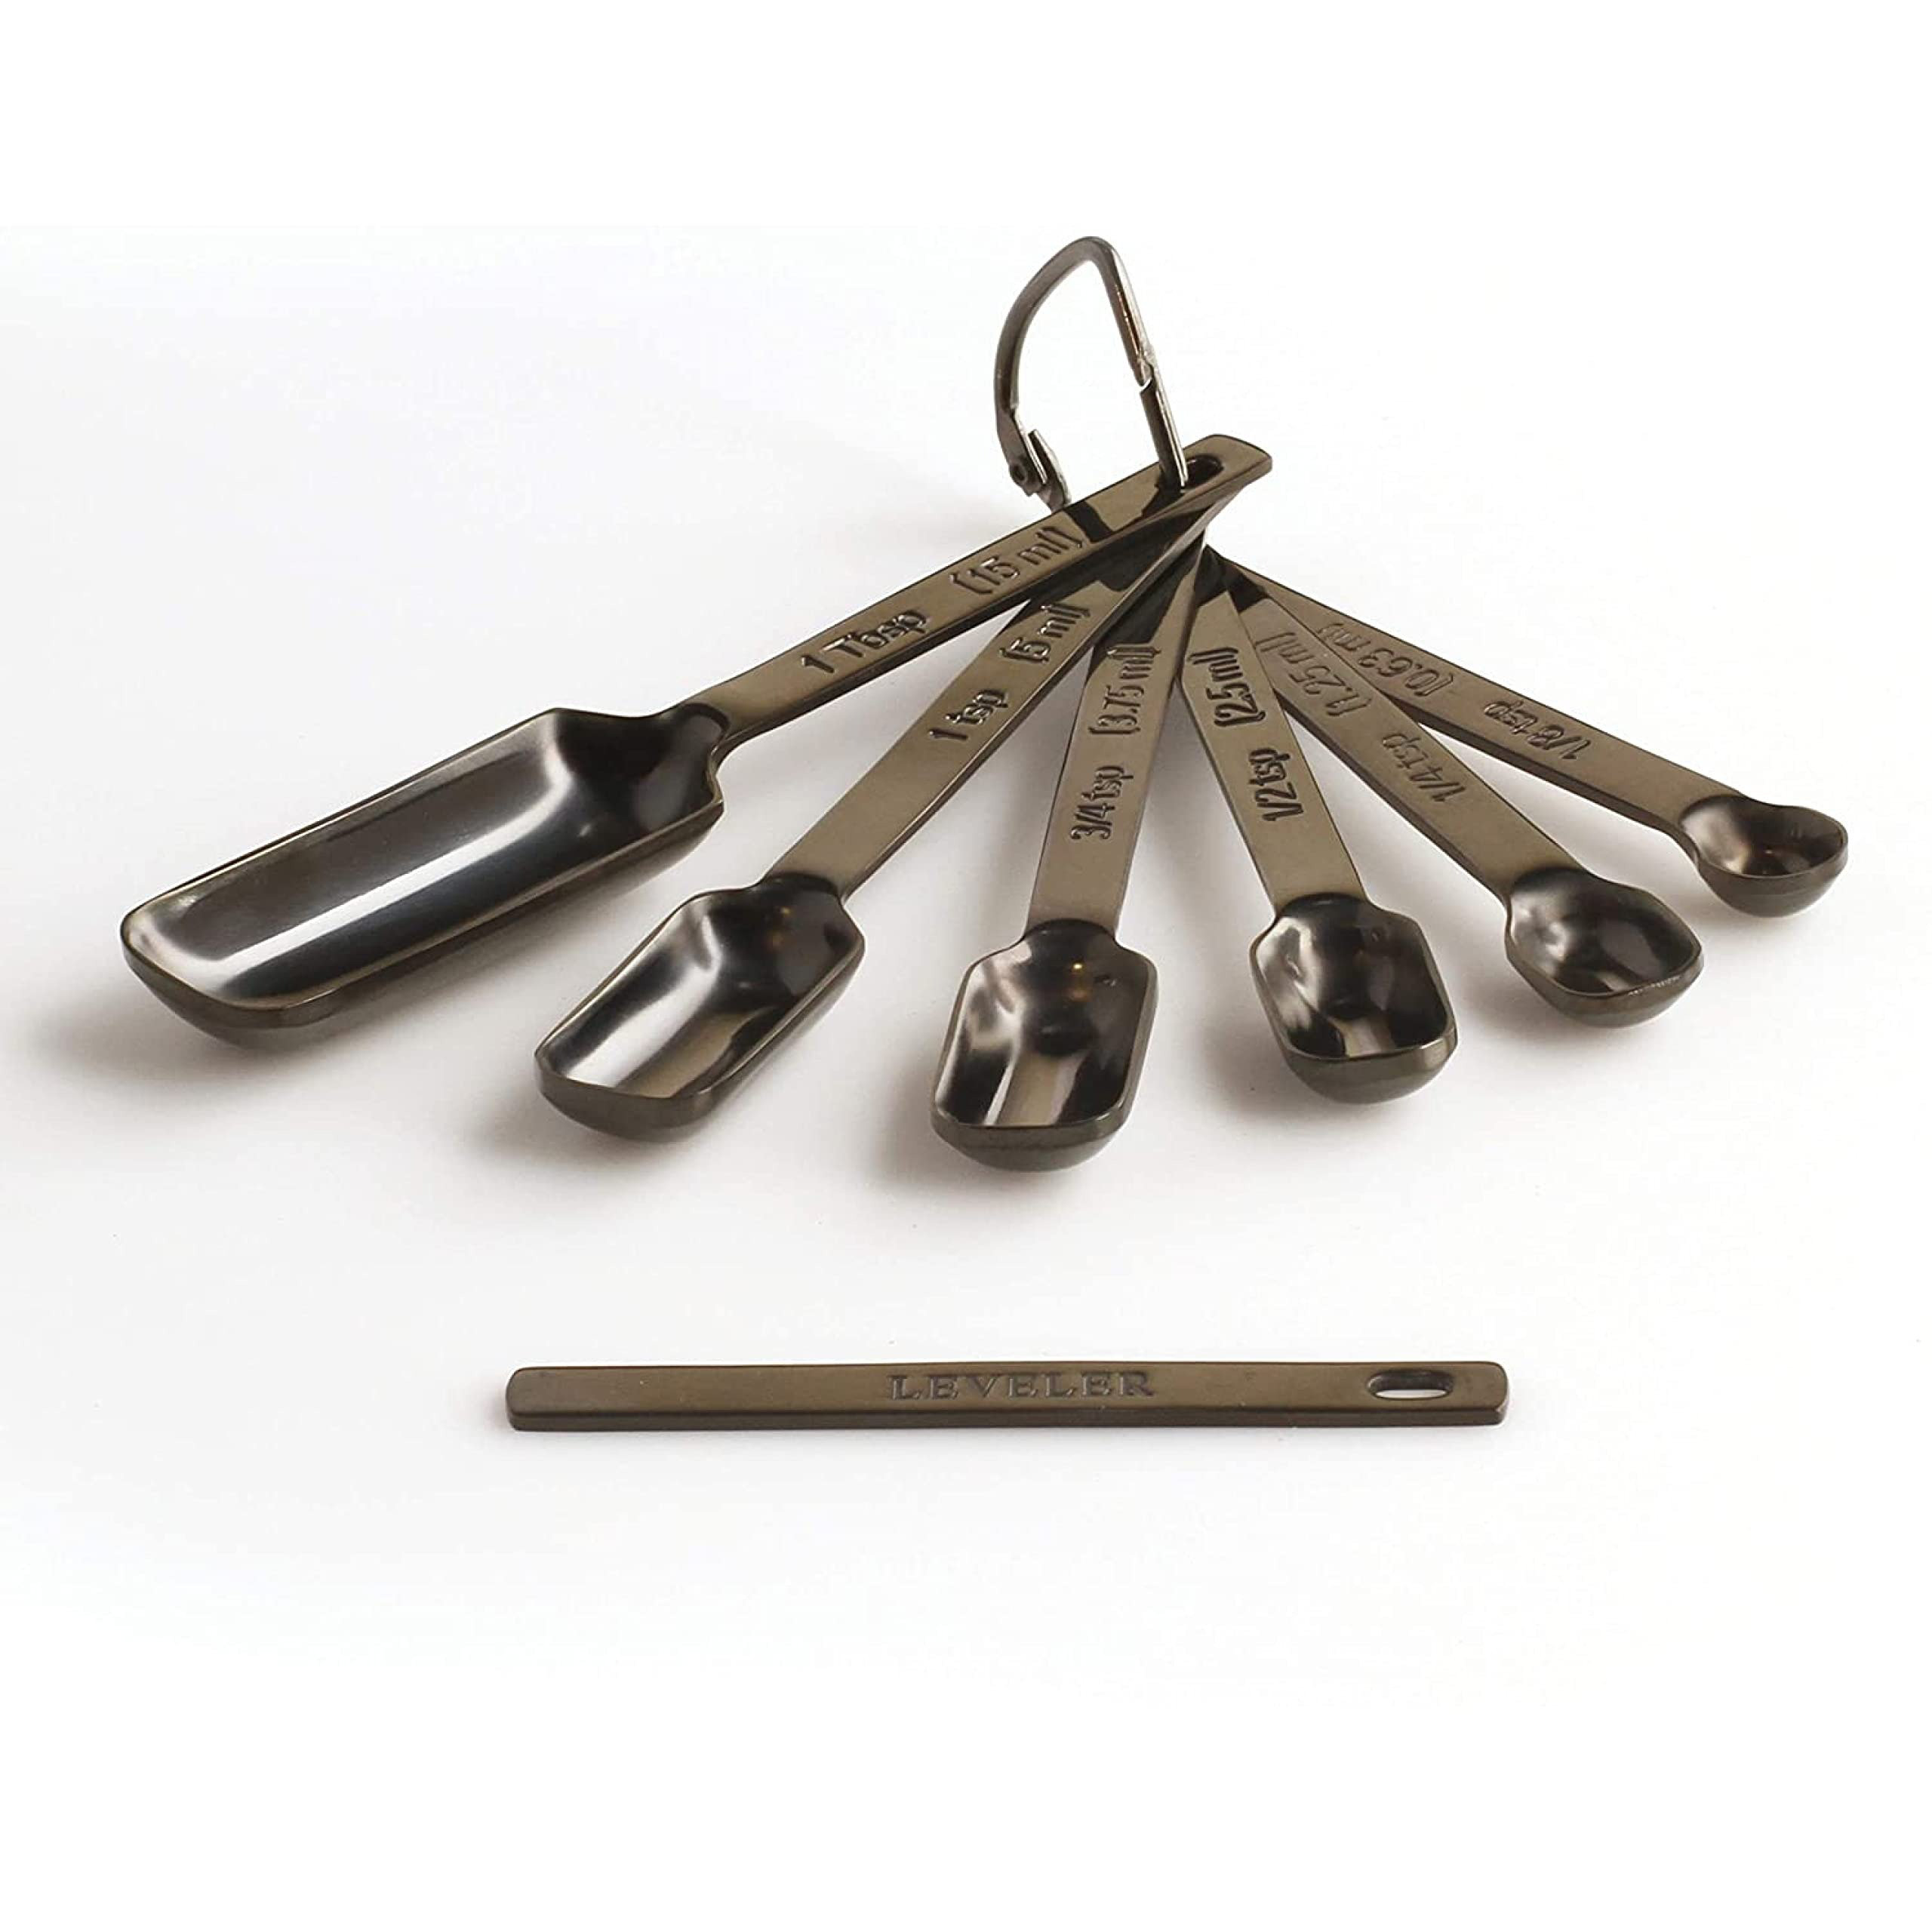 2lbDepot Single 1/8 Teaspoon (tsp) Measuring Spoon, Heavy-Duty Stainless  Steel, Narrow